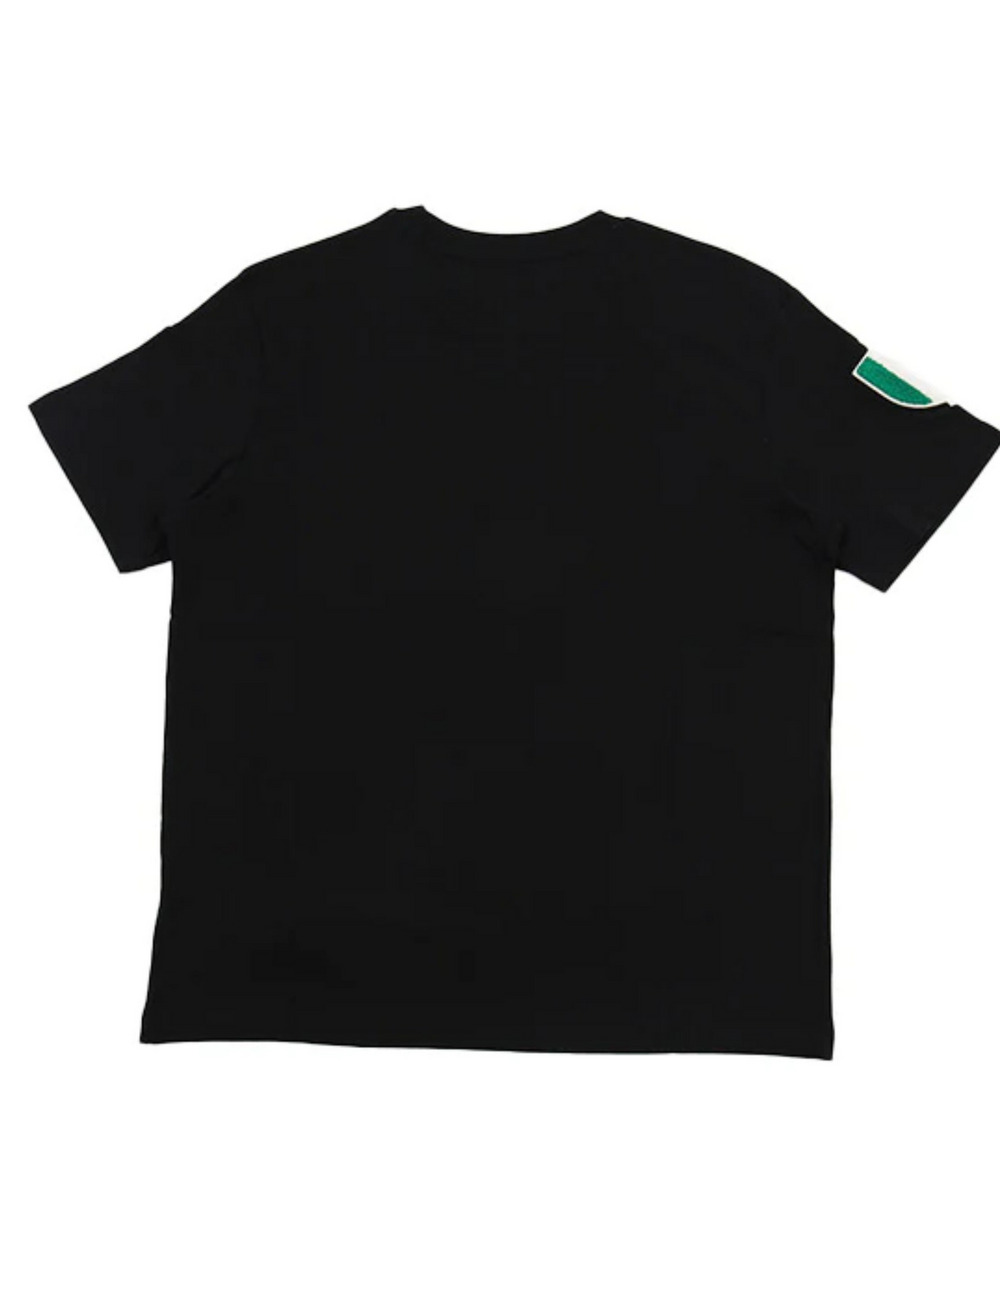 アイコンスカルTシャツ(半袖) / ICON SKULL T SHIRT 詳細画像 ブラック 2